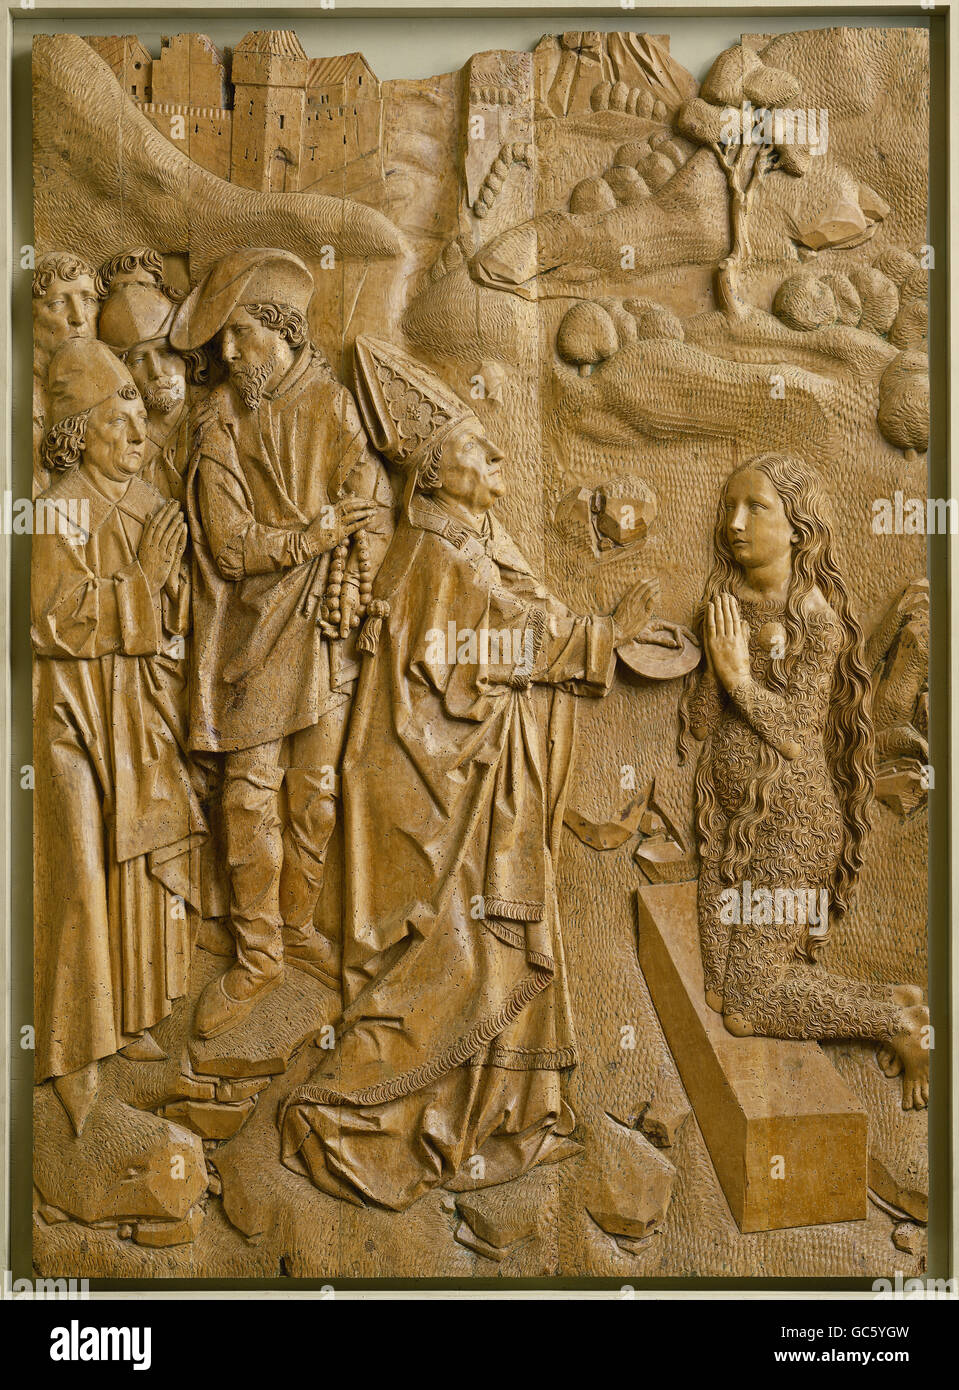 Belle arti, Riemenschneider, Tilman (circa 1460 - 1531): scultura, Muennerstadt altare, ala destra, ultima comunione di Maria Magedalen, l'intaglio del legno, 1491 - 1492, Muennerstadt, Germania, Foto Stock